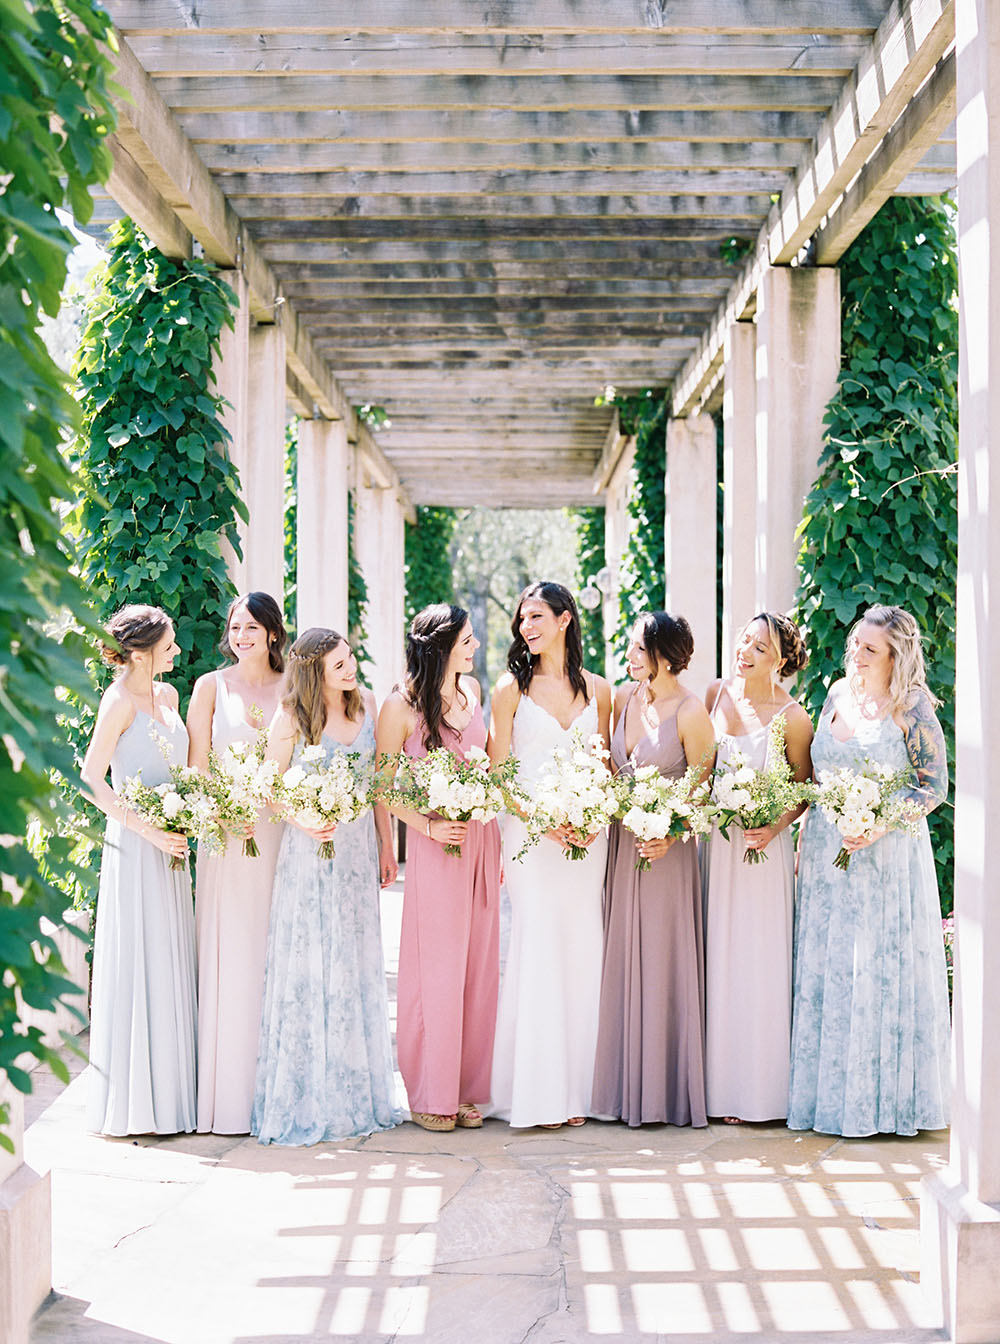 Mismatched Floral Bridesmaid Dresses